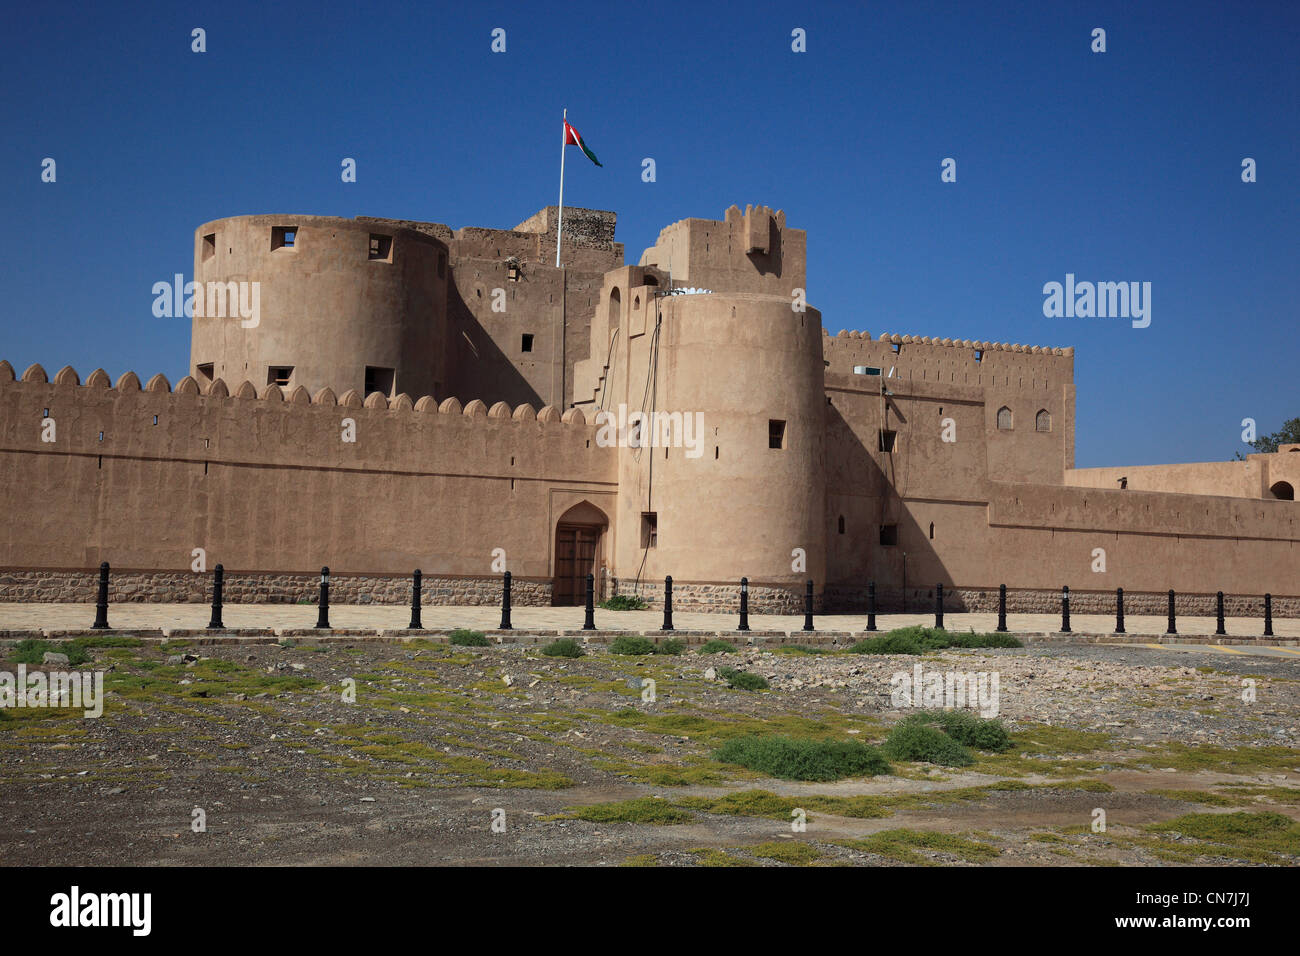 Das Schloss von Jabrin oder Schloss von Jabreen ist ein auch als Fort bezeichnetes Wohnschloss aus dem Mittelalter in der Wüste Stock Photo